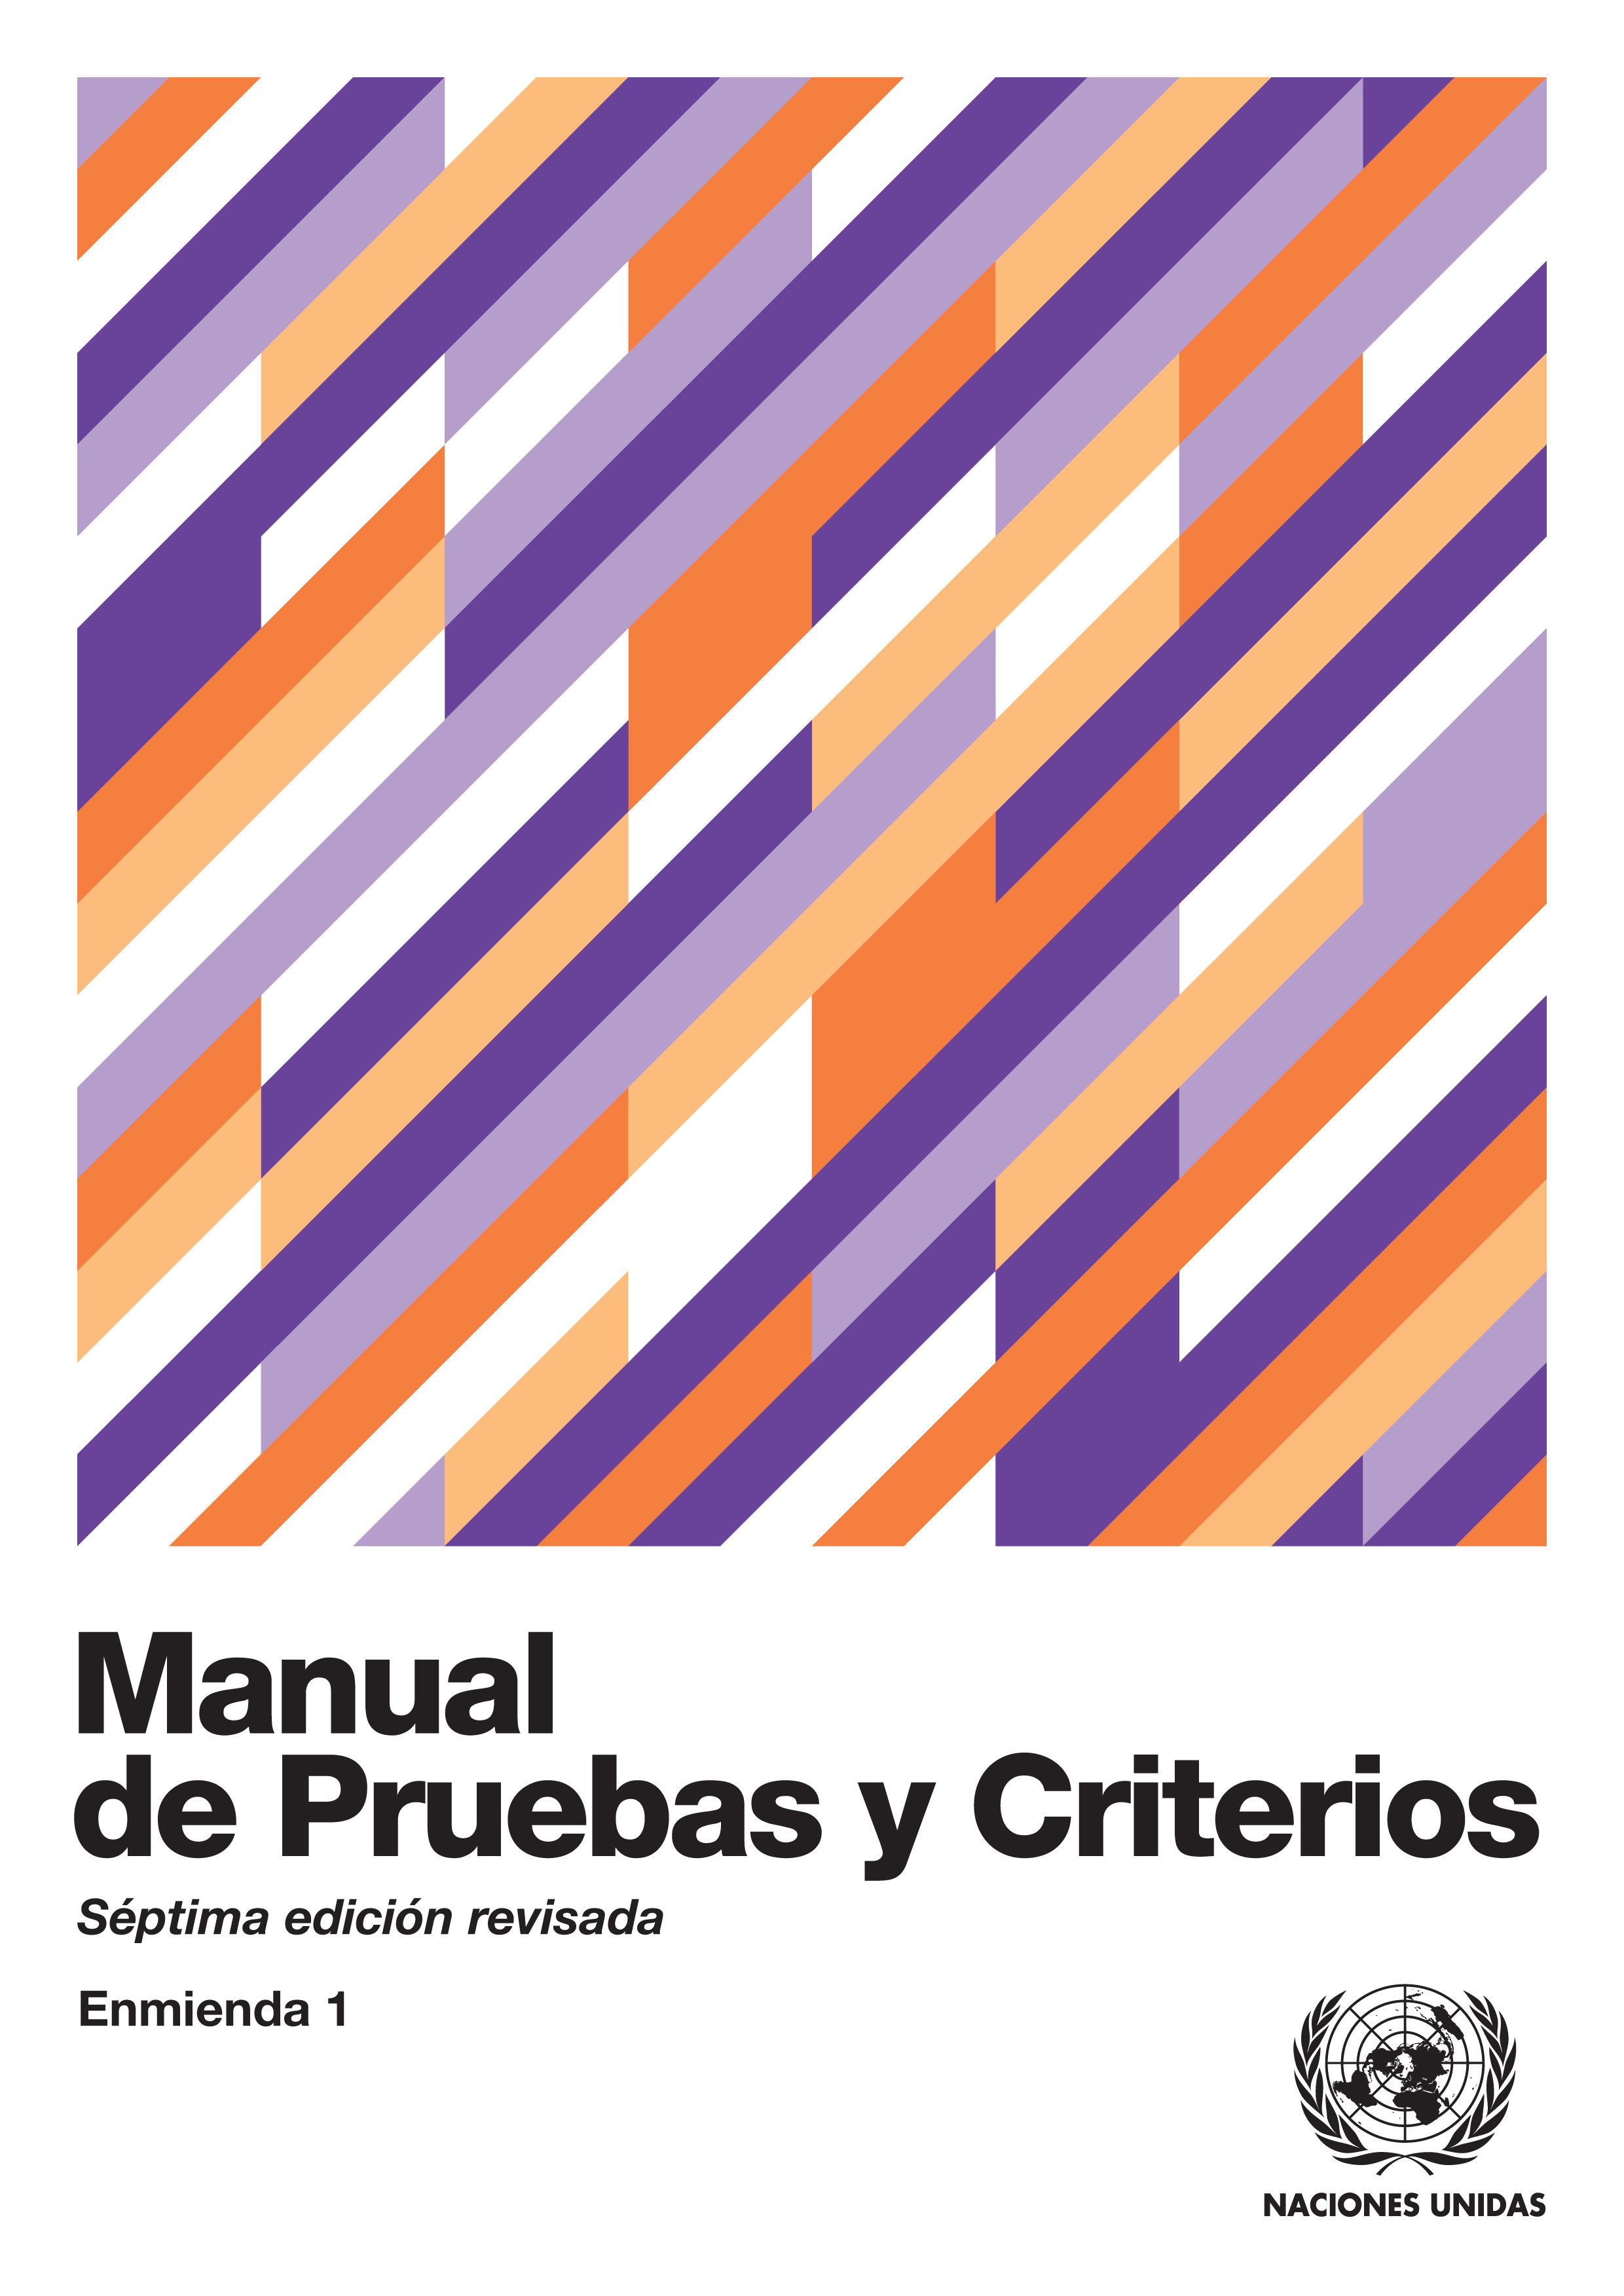 image of Manual de Pruebas y Criterios - Séptima edición revisada, Enmienda 1